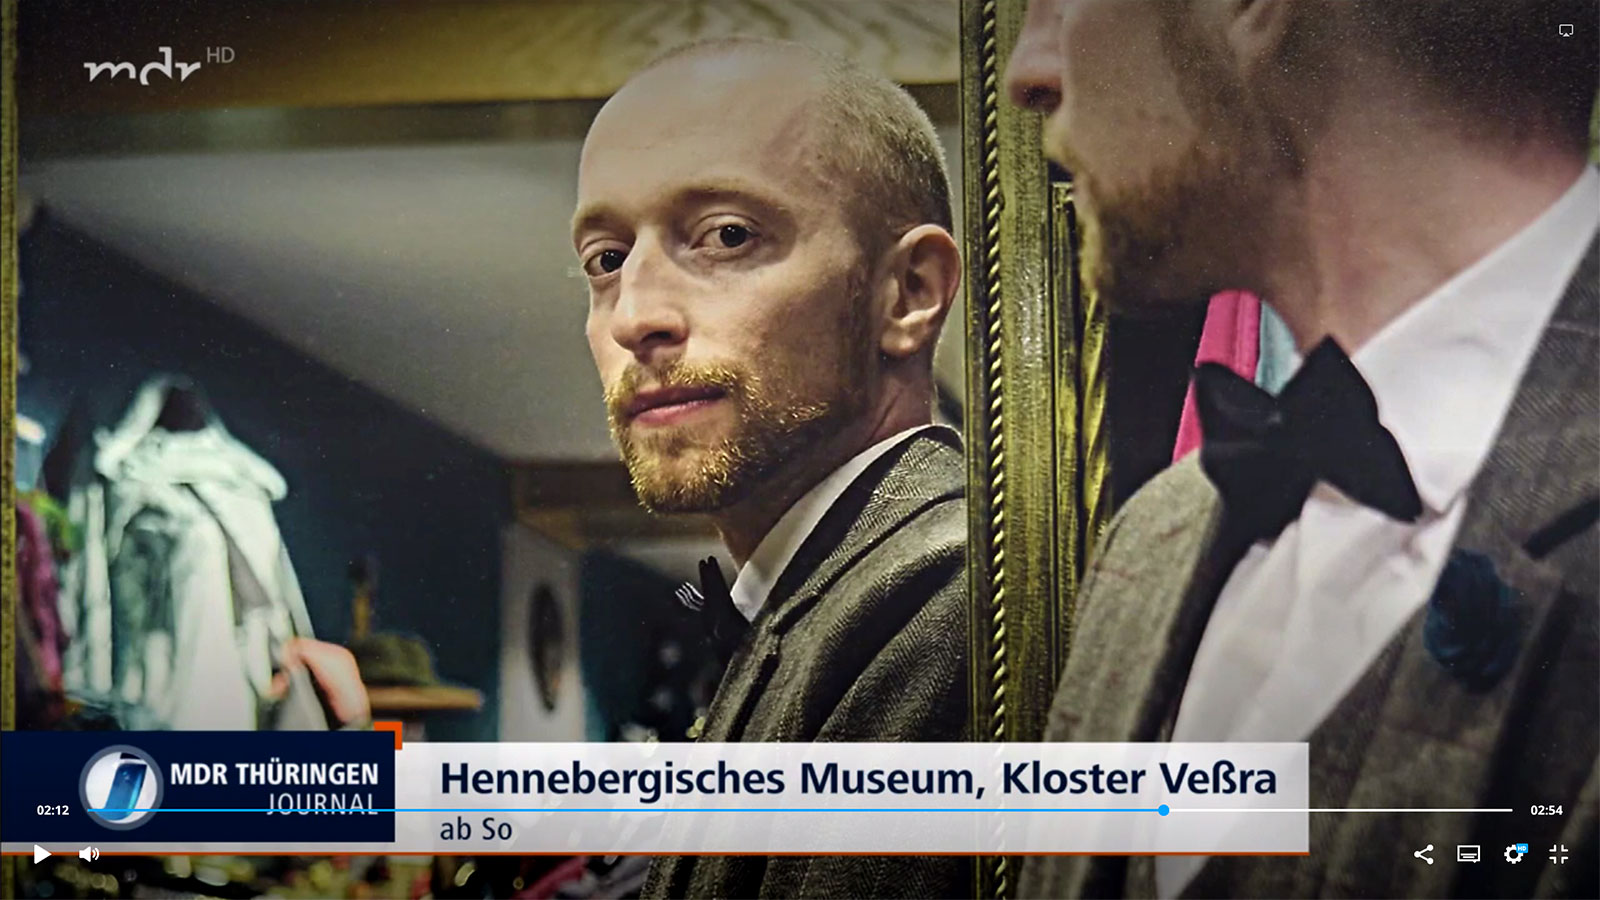 MDR Thüringen Journal: Veranstaltungsvorschau: Hennebergisches Museum Kloster Veßra (02.03.2023)